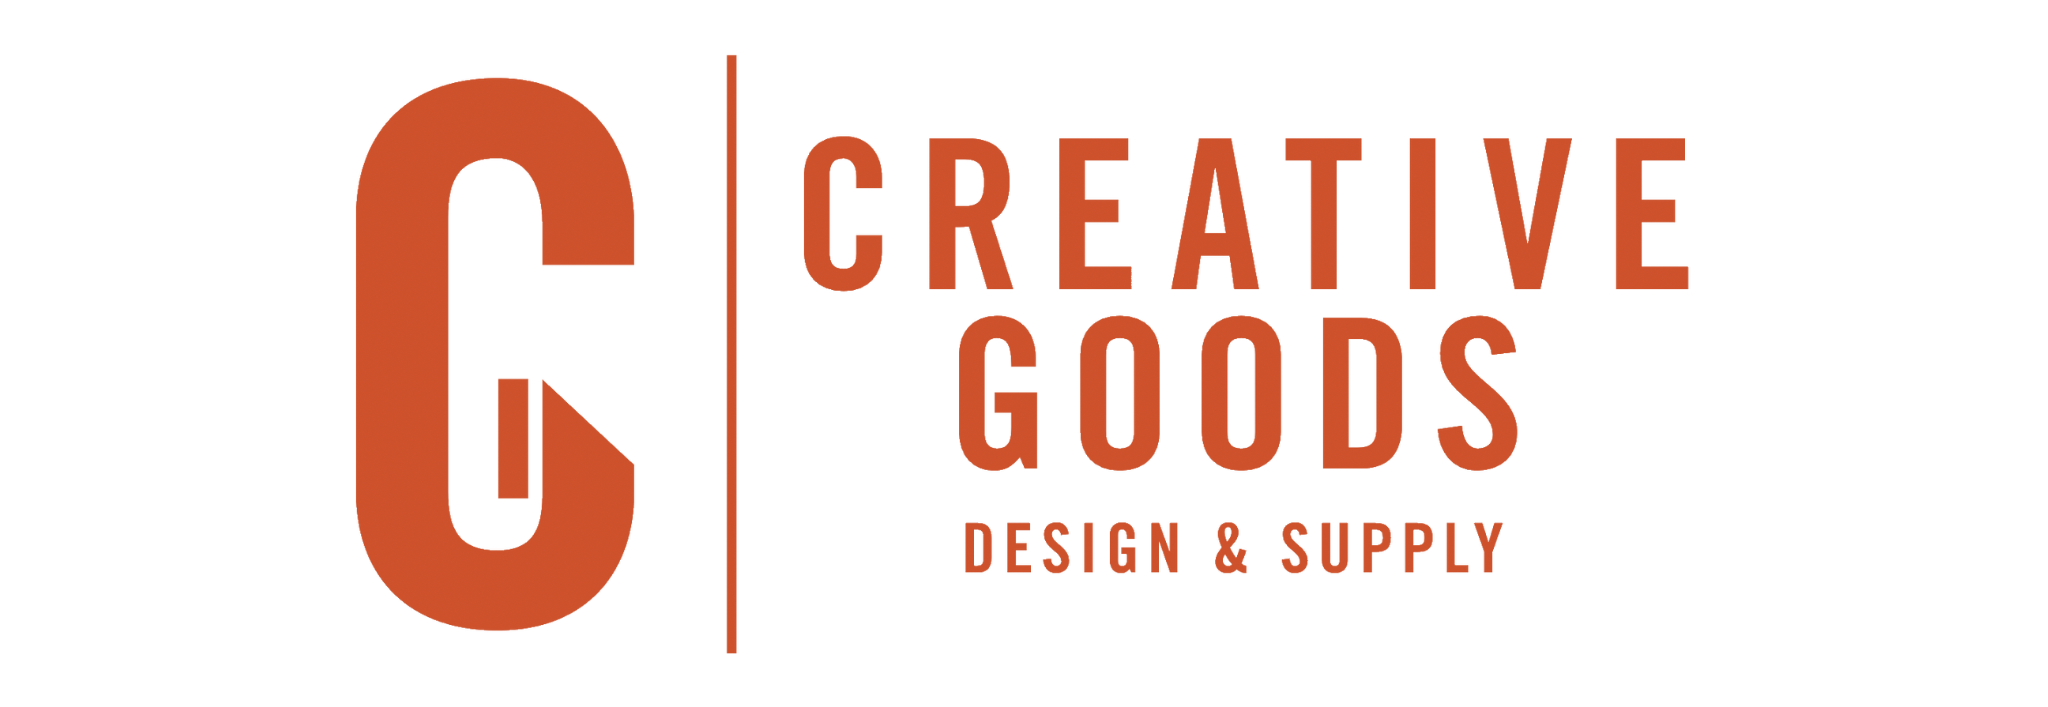 Creative Goods